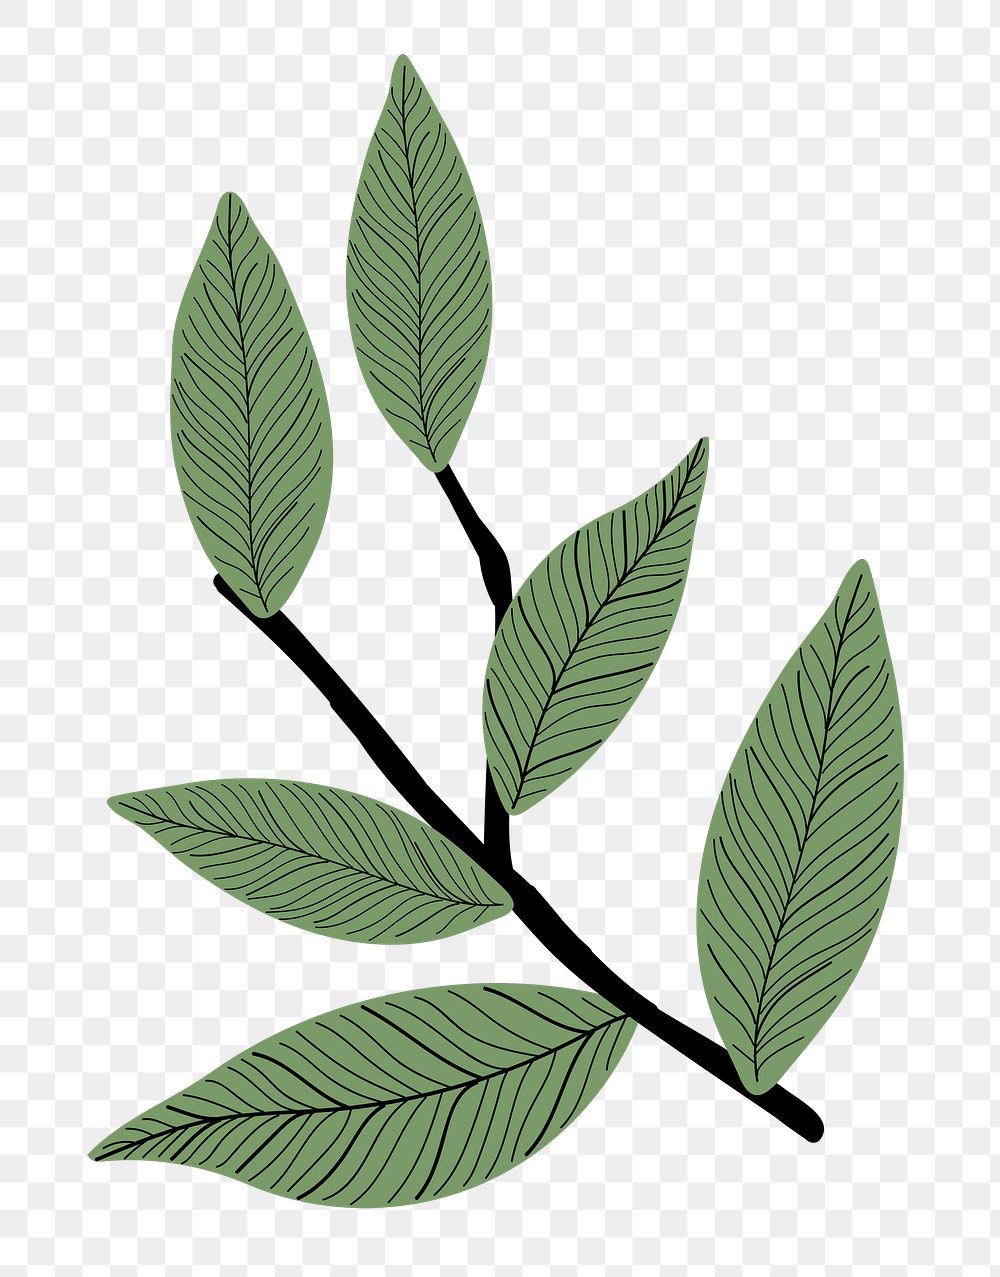 Leaf branch png sticker, aesthetic botanical doodle, transparent background